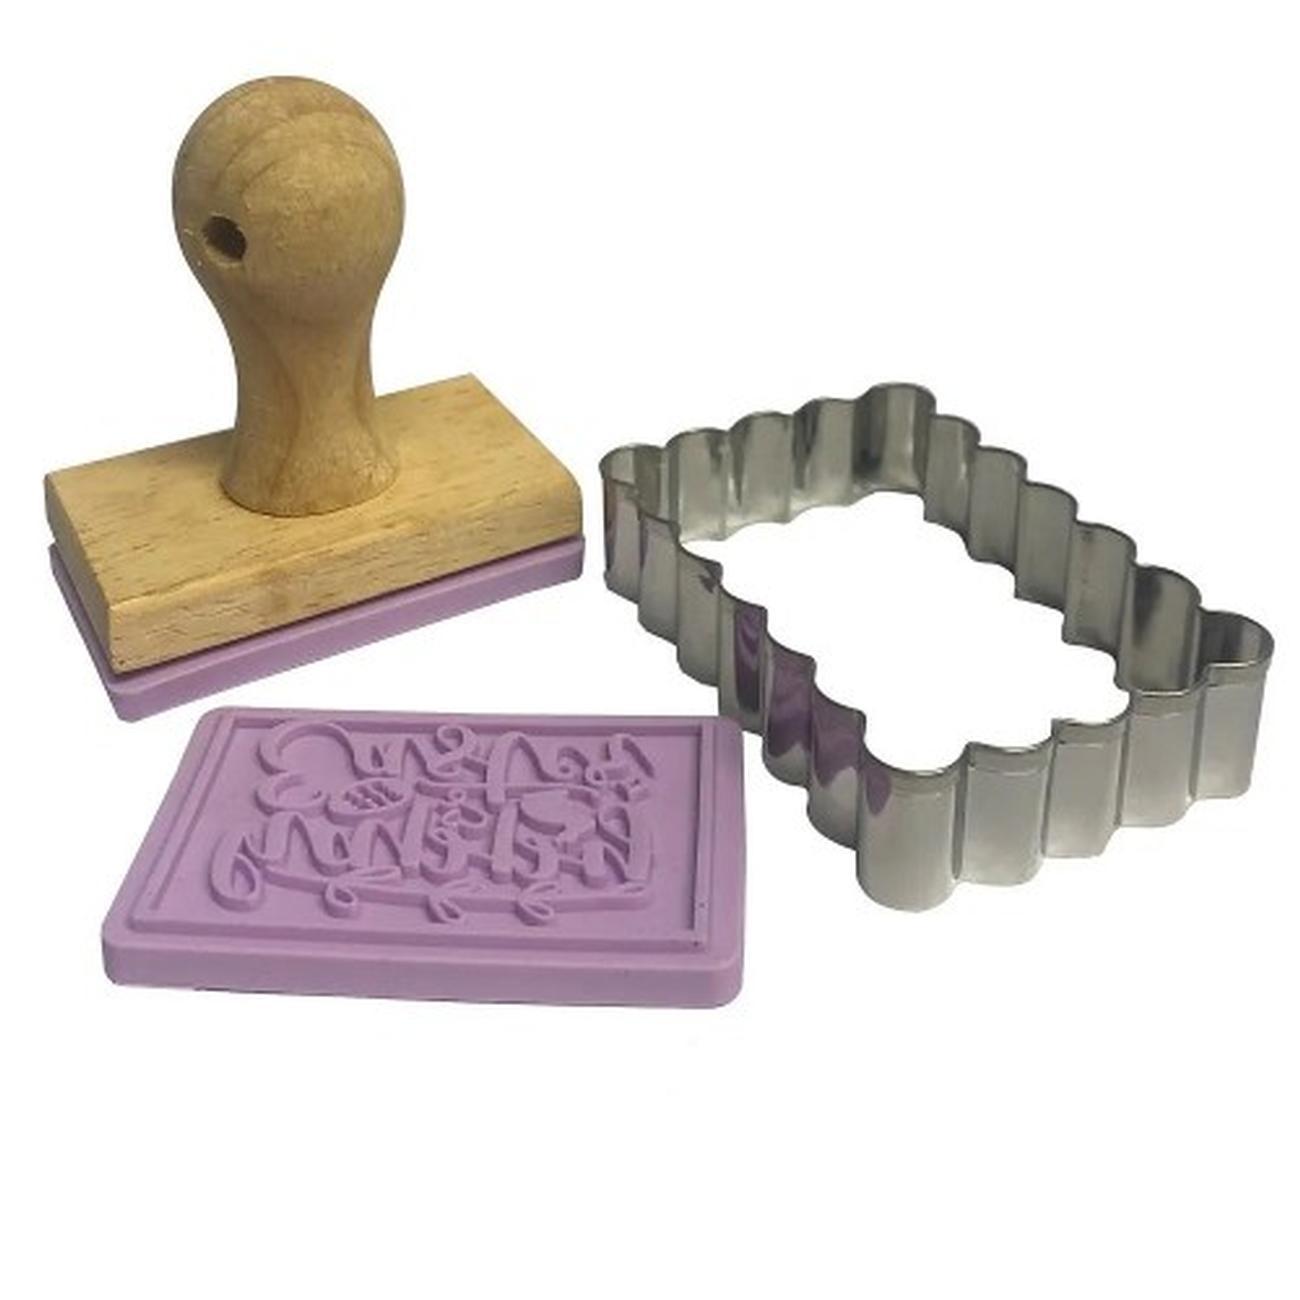 eddingtons-springtime-biscuit-stamp-gift-set - Eddingtons Springtime Biscuit Stamp Gift Set